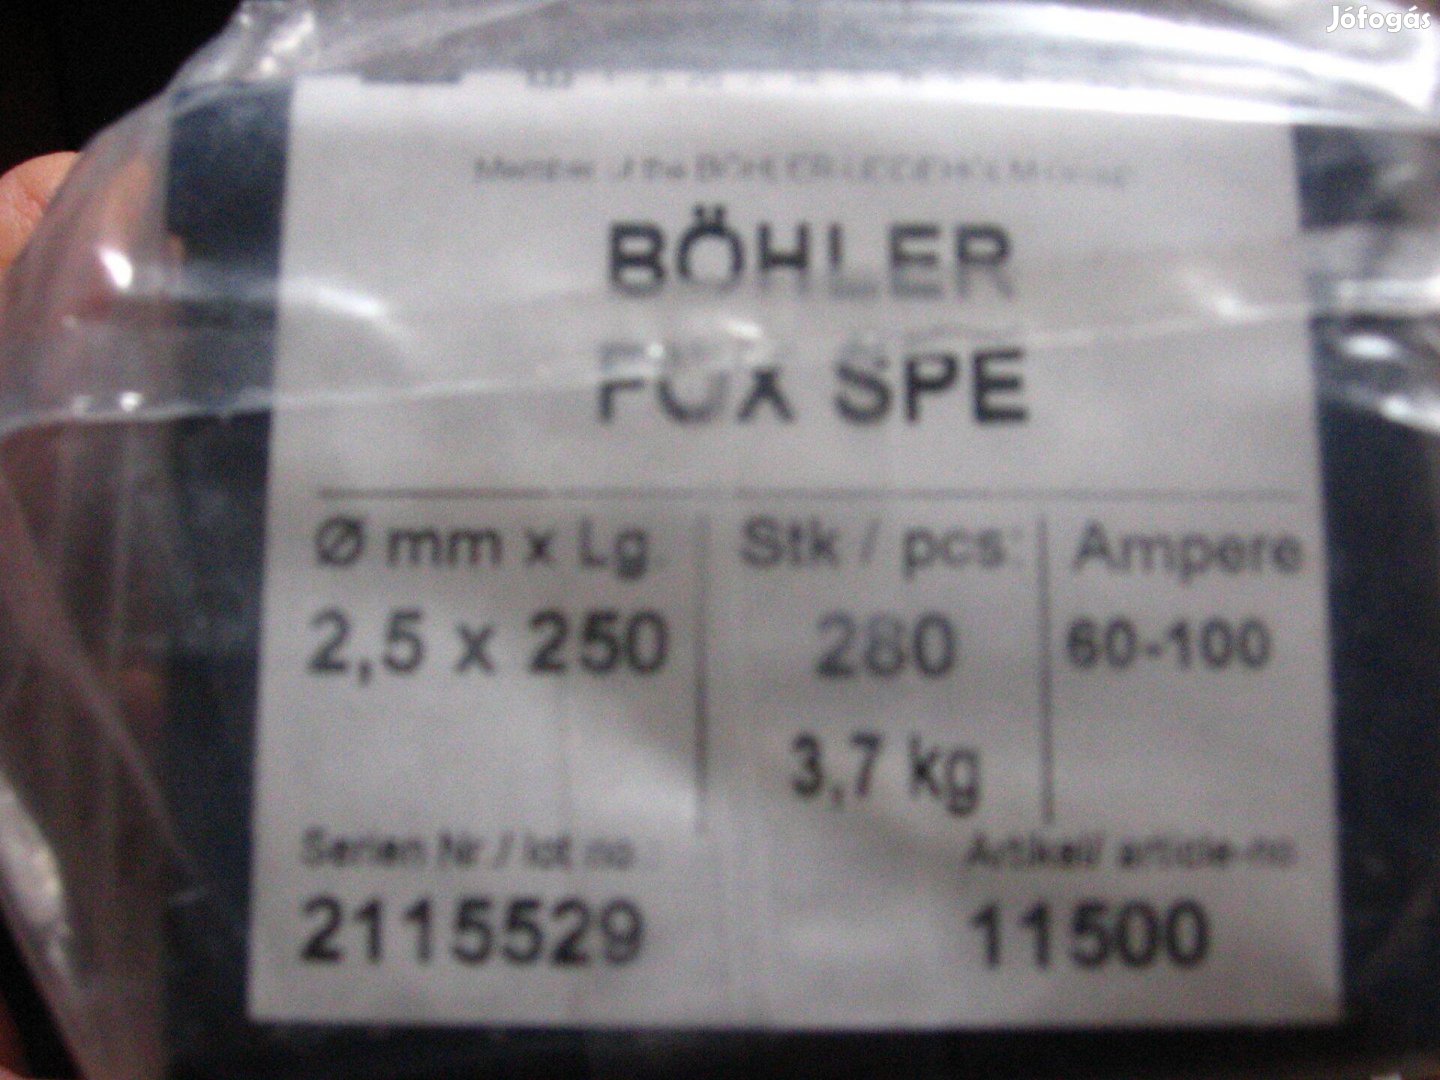 Hegesztő elektróda Böhler 2,5 X 250mm, 3,7 kg